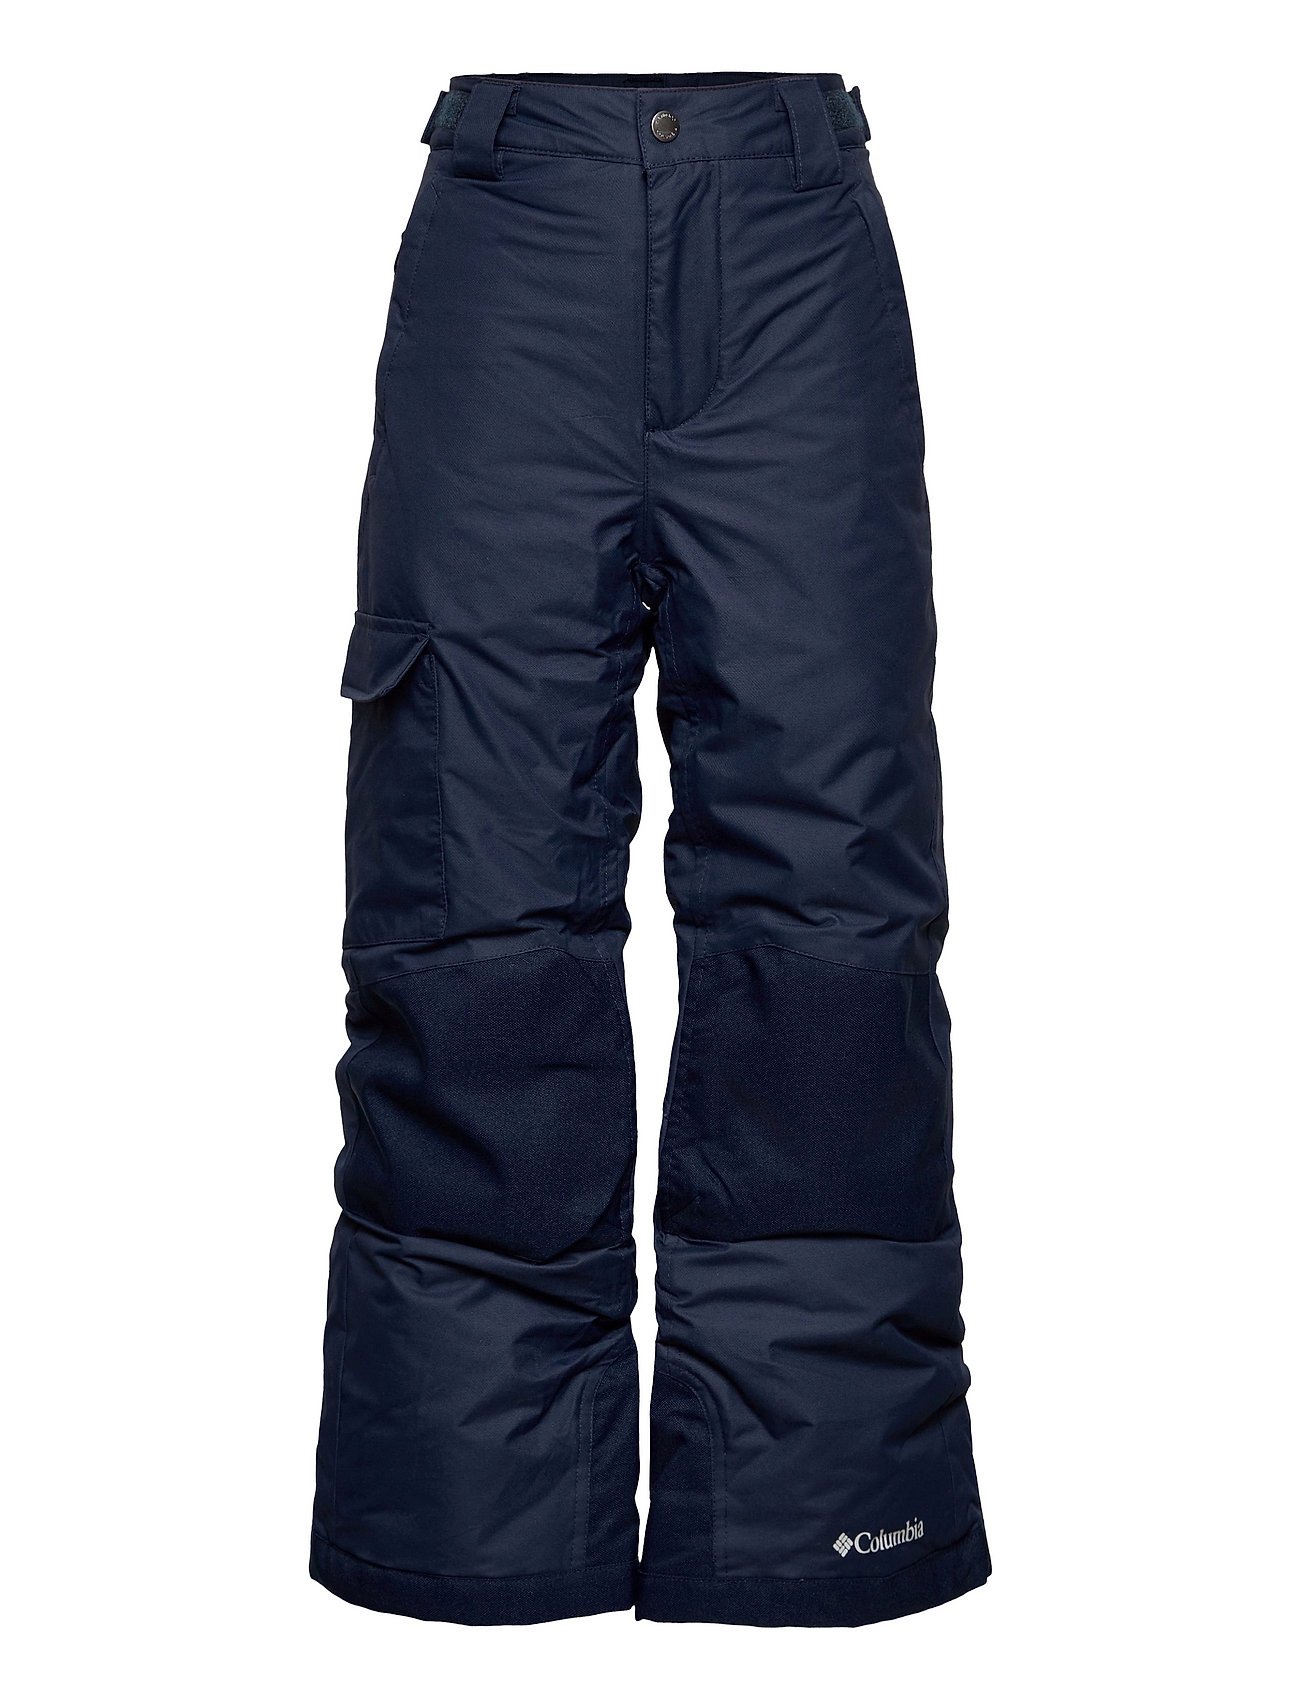 Bugaboo Ii Pant Outerwear Snow/ski Clothing Snow/ski Pants Sininen Columbia